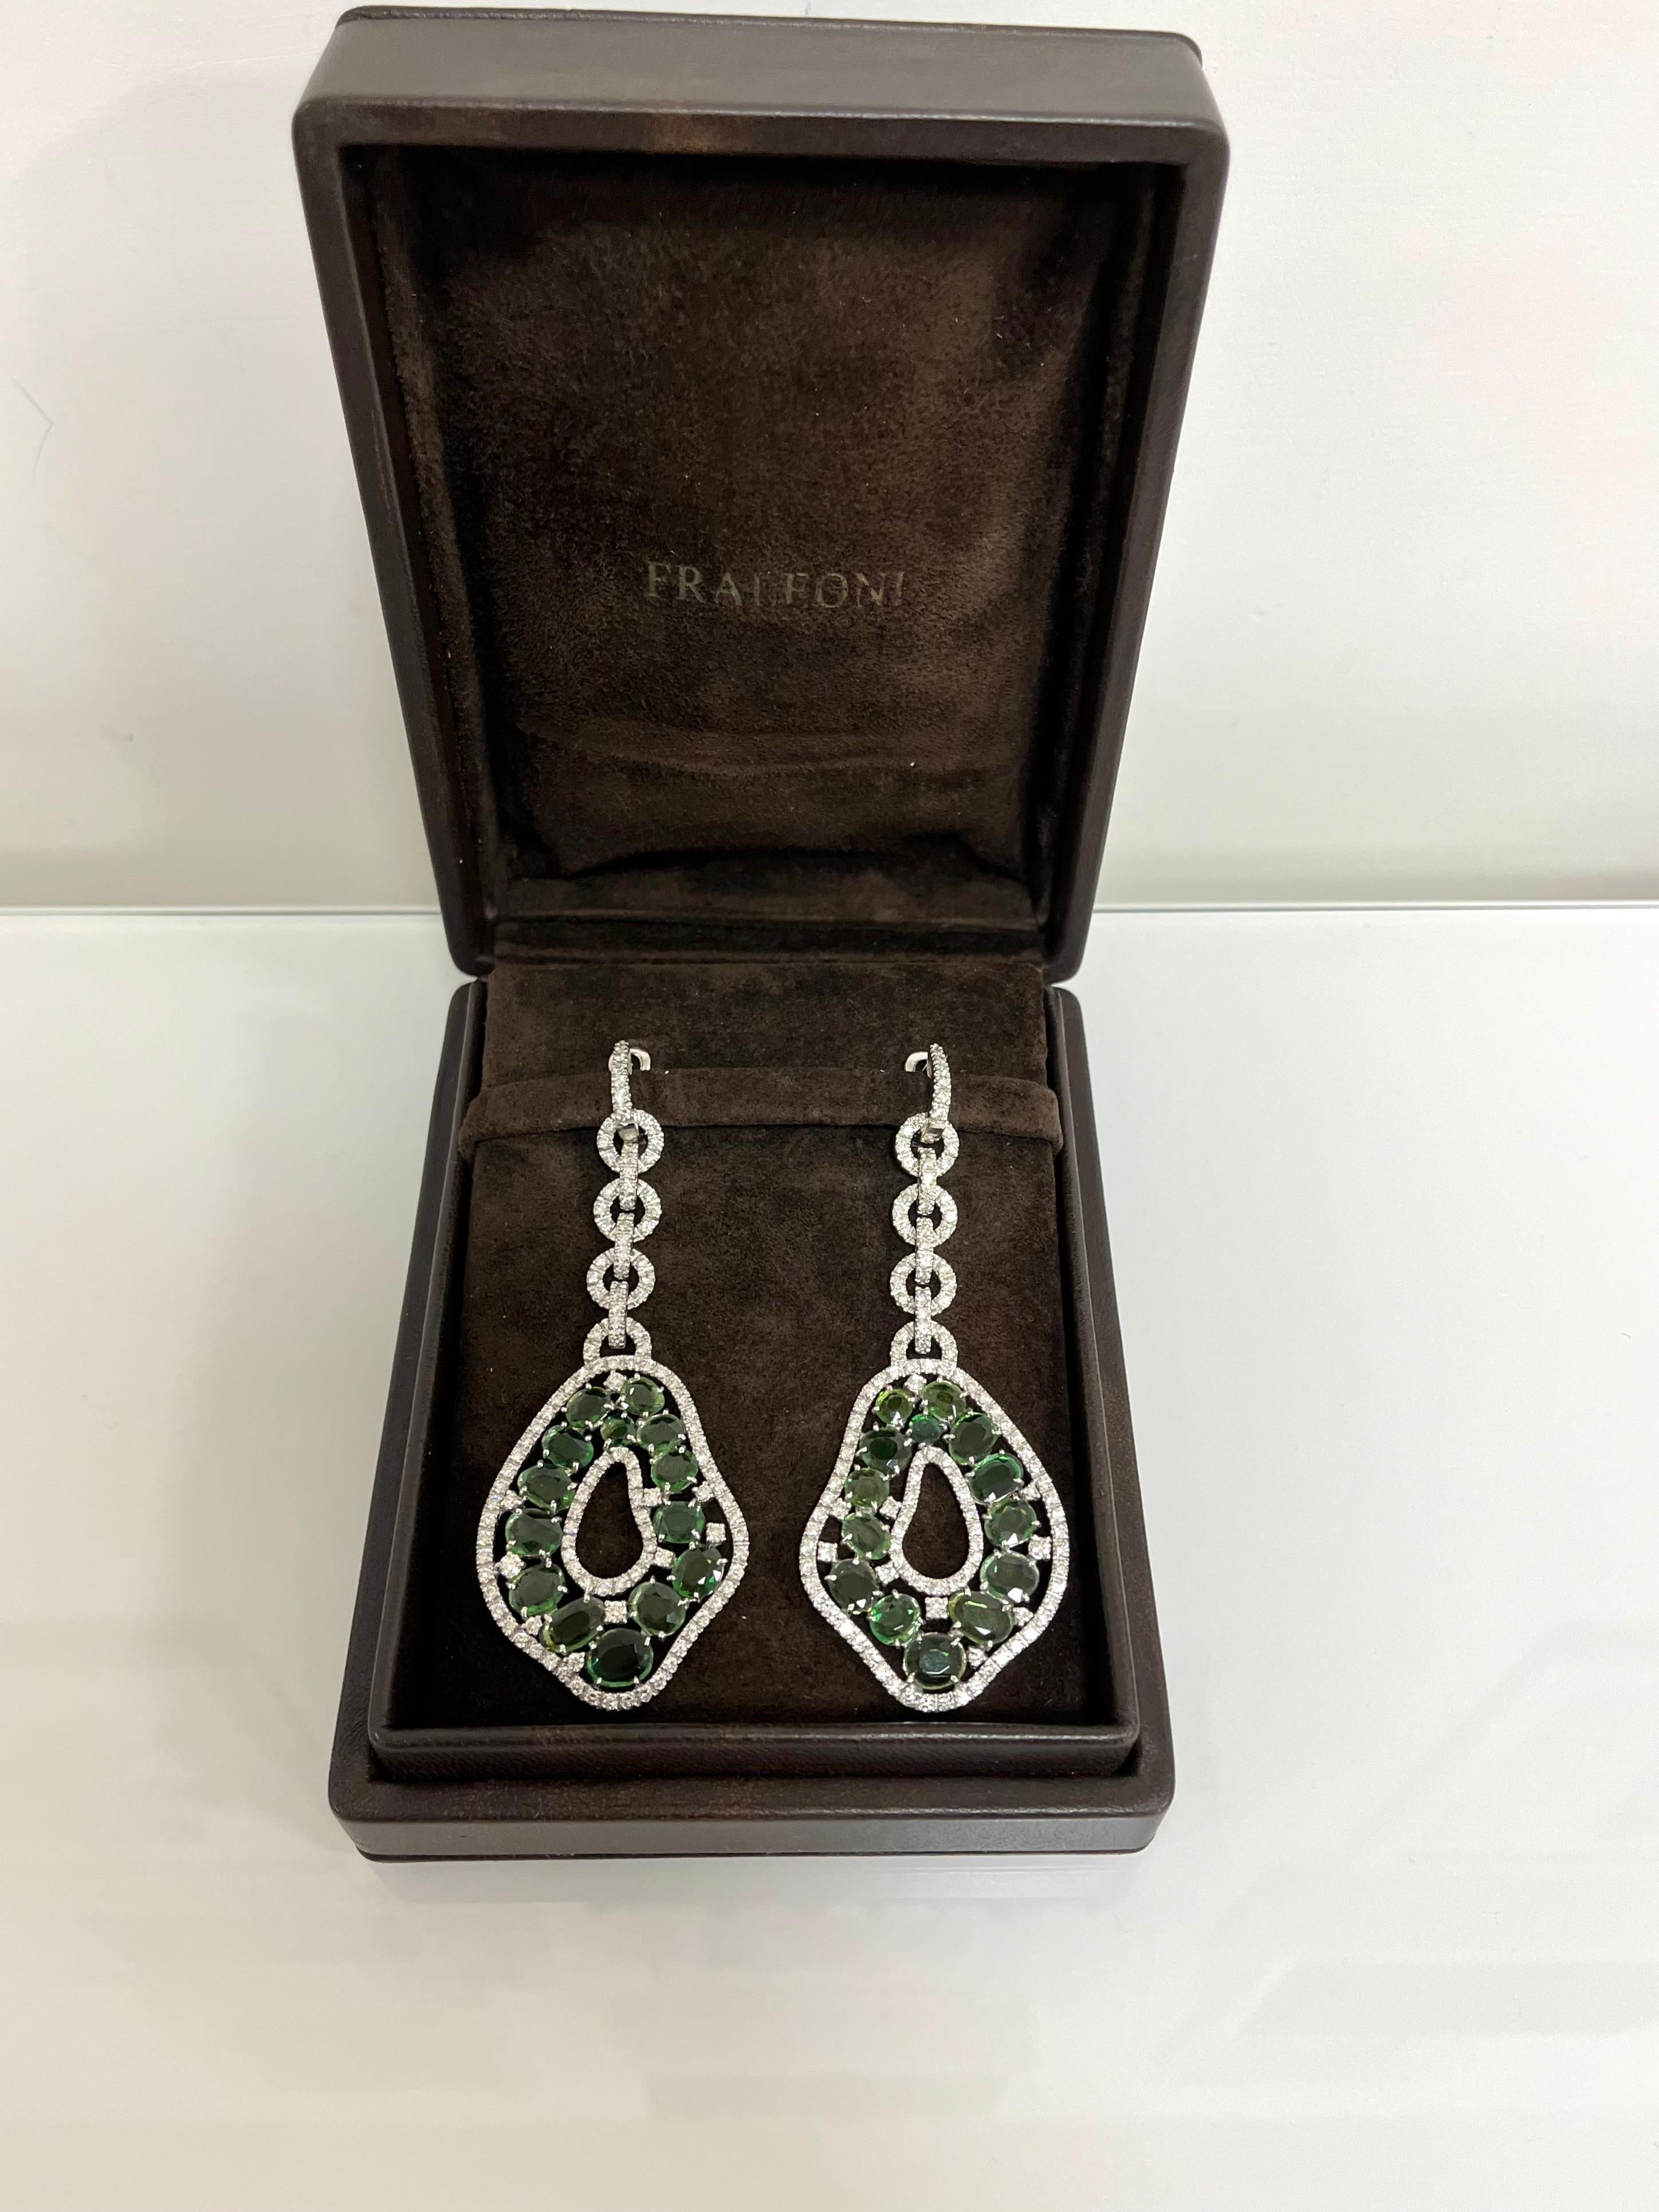 Fraleoni 18 Kt. White Gold Diamonds Green Tourmalines Earrings For Sale 3